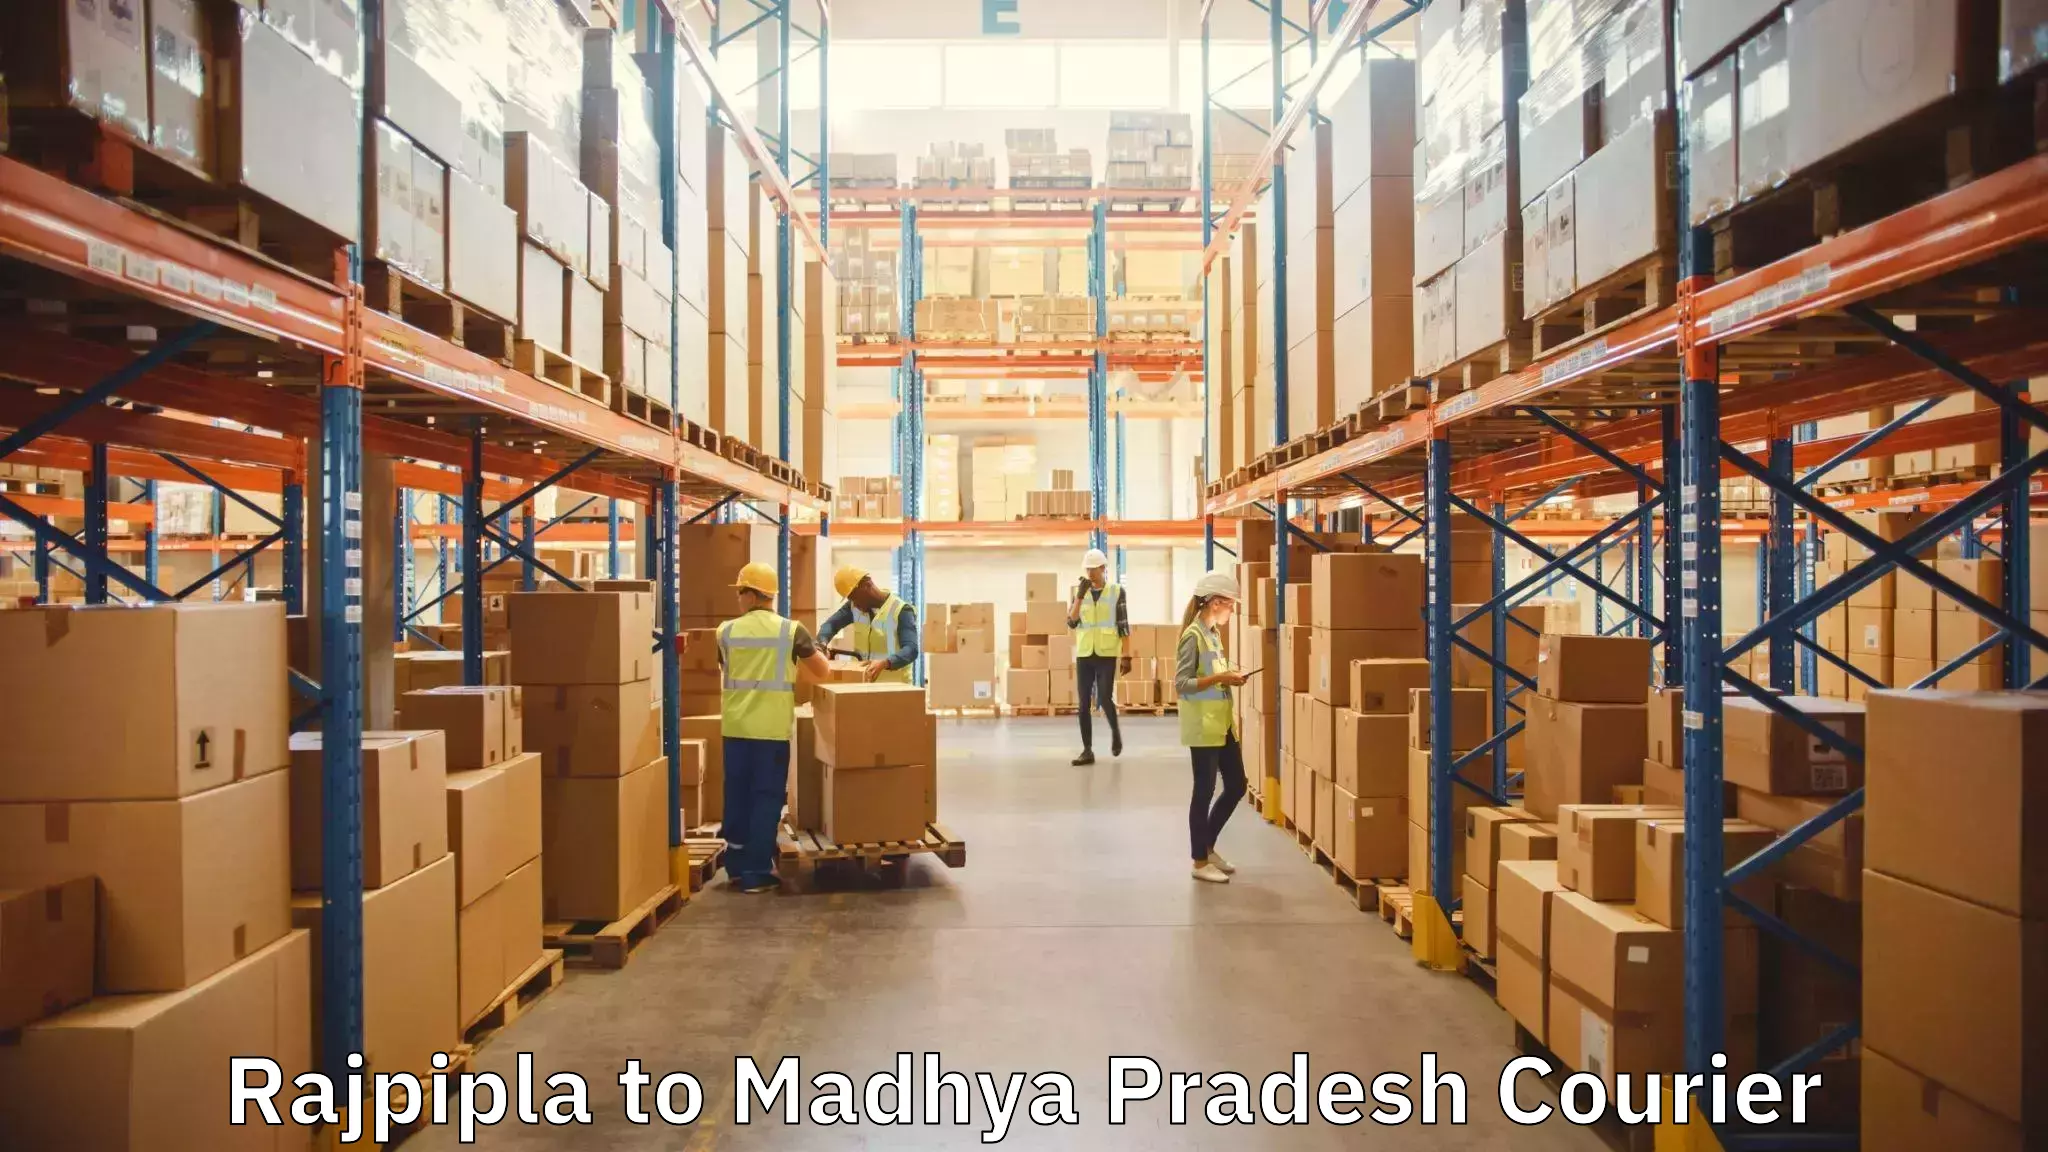 Furniture moving experts Rajpipla to Madhya Pradesh